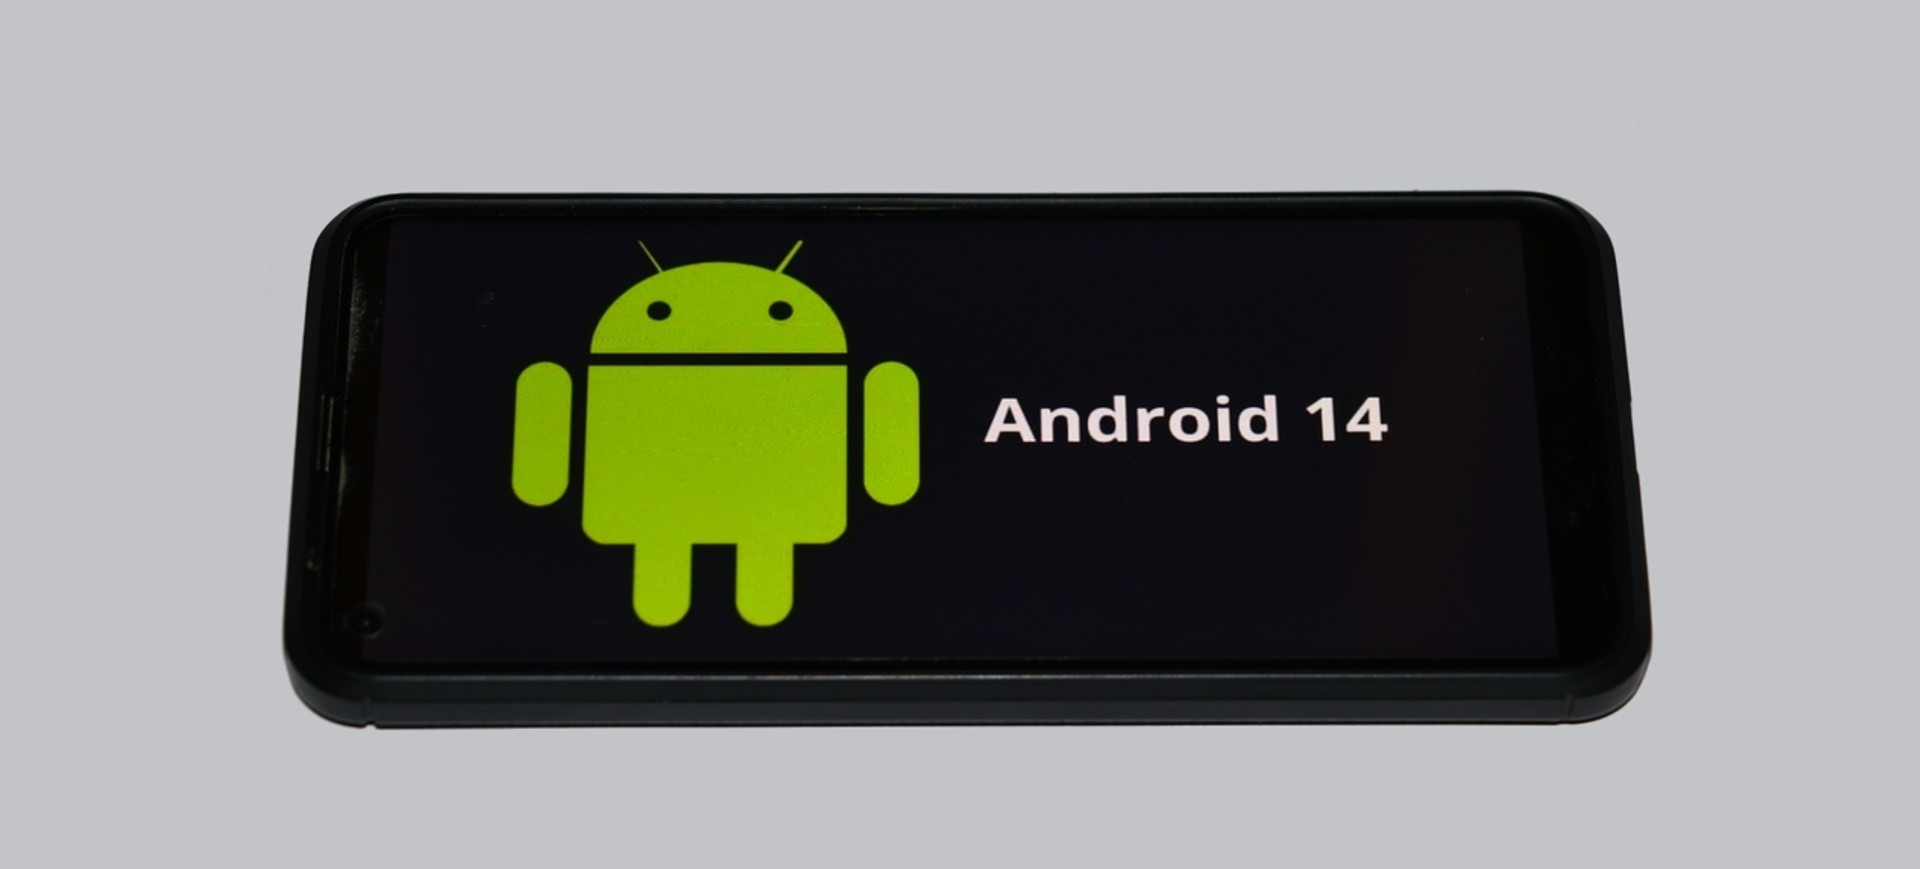 Tela de smartphone mostra o robô do Android e ao lado é possível ler Android 14, o sistema operacional do Google